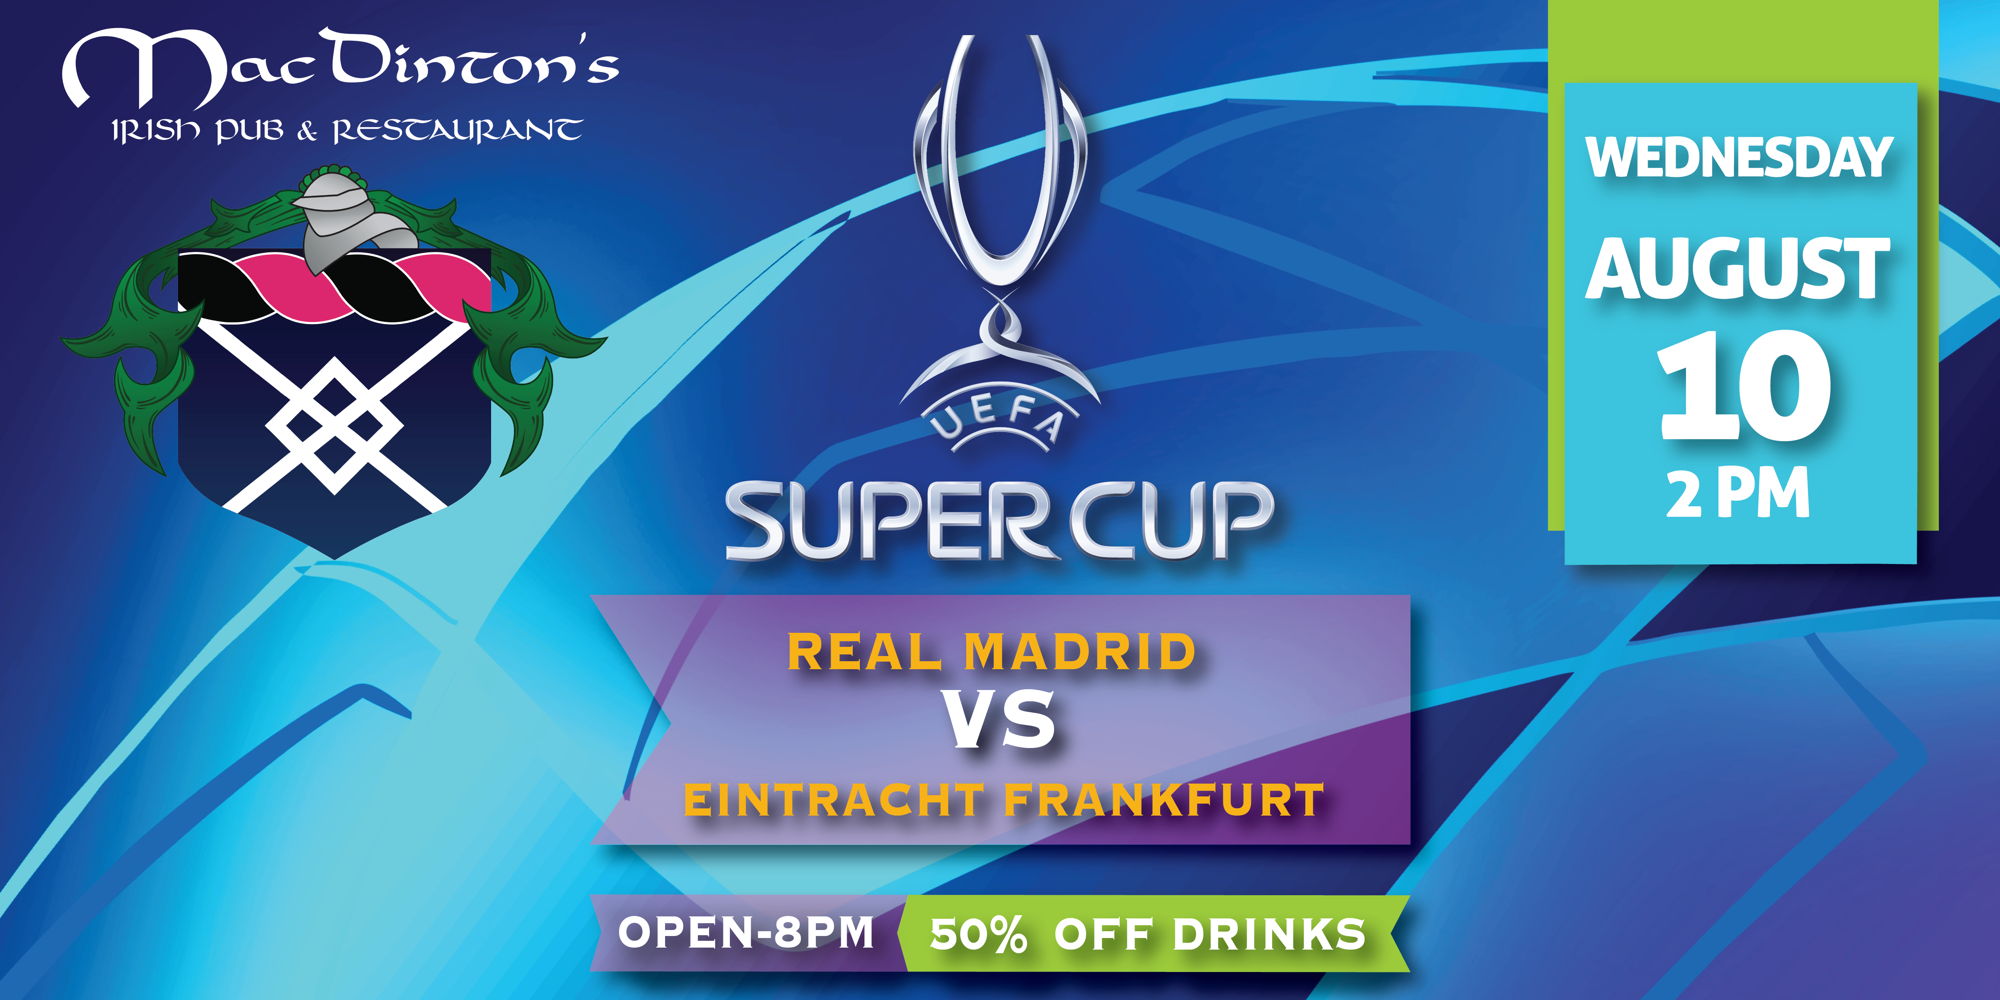 UEFA Super Cup promotional image